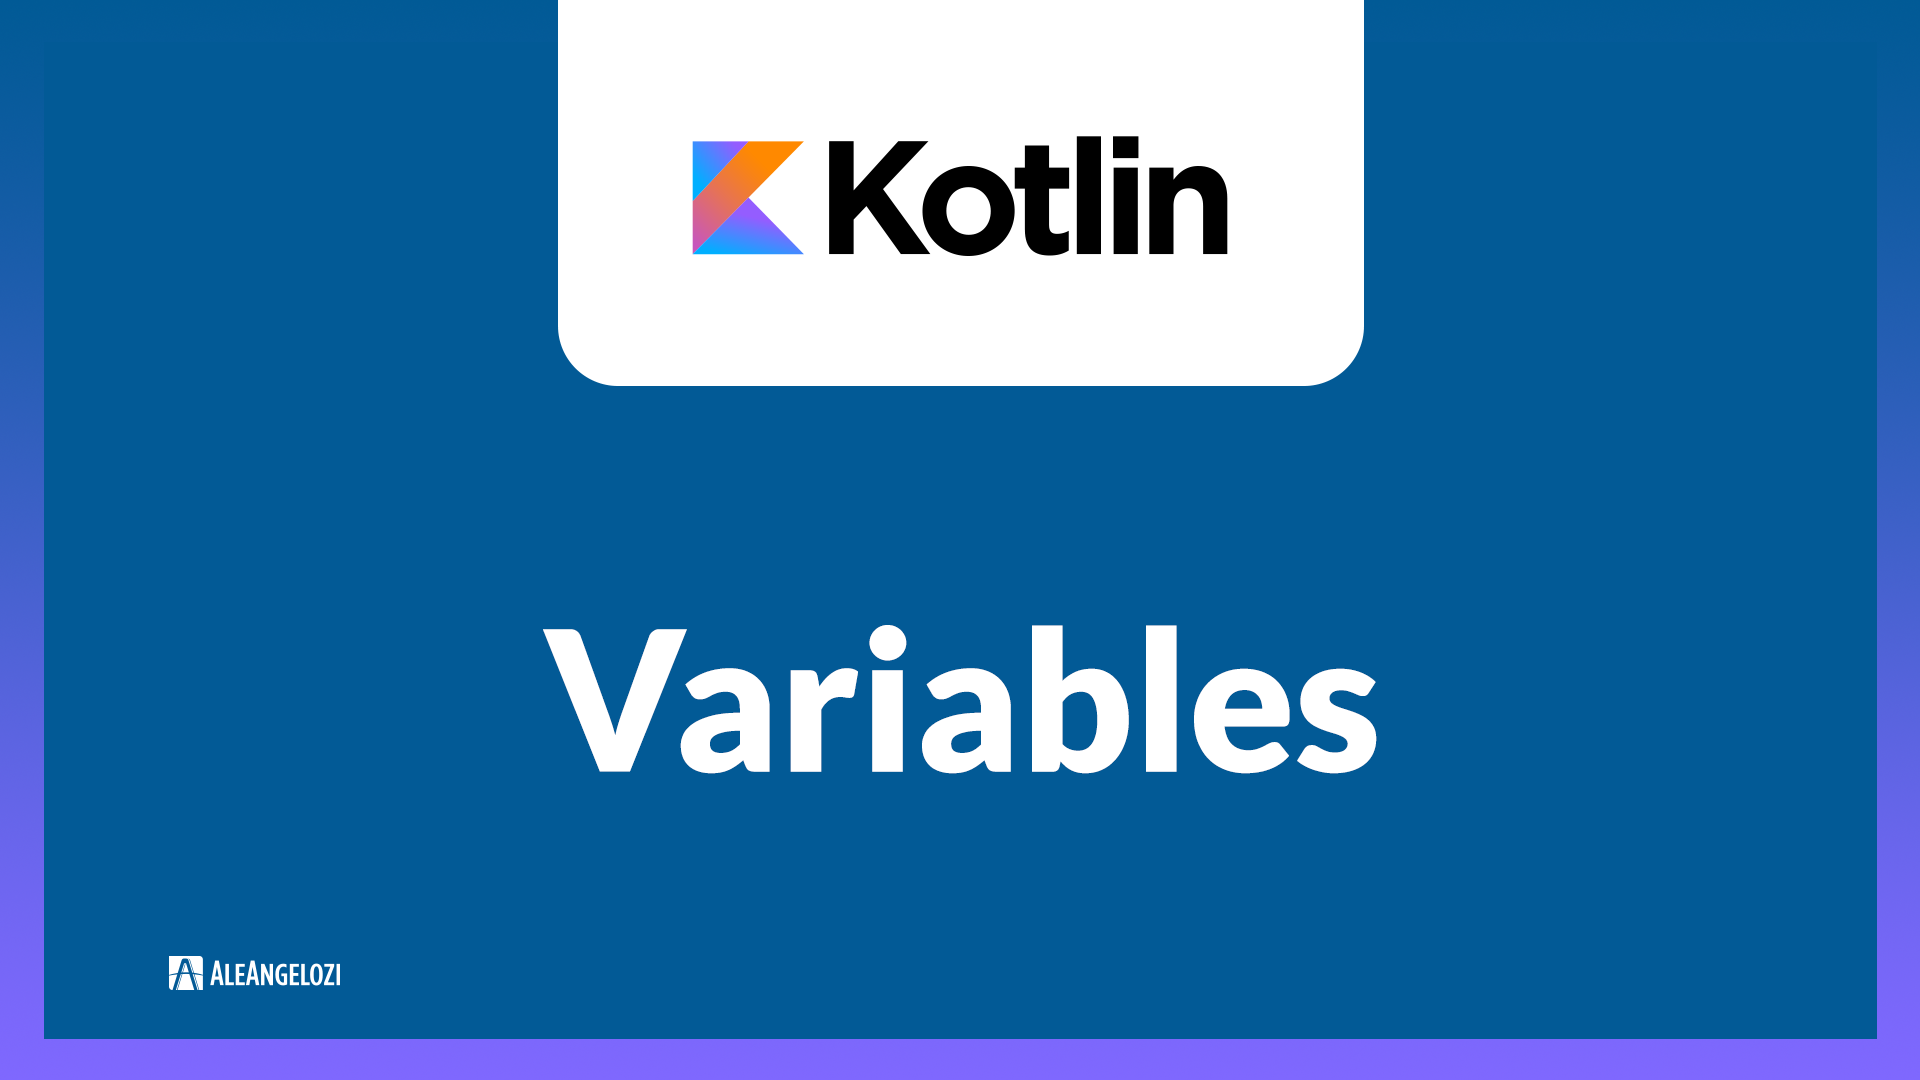 kotlin with keyword